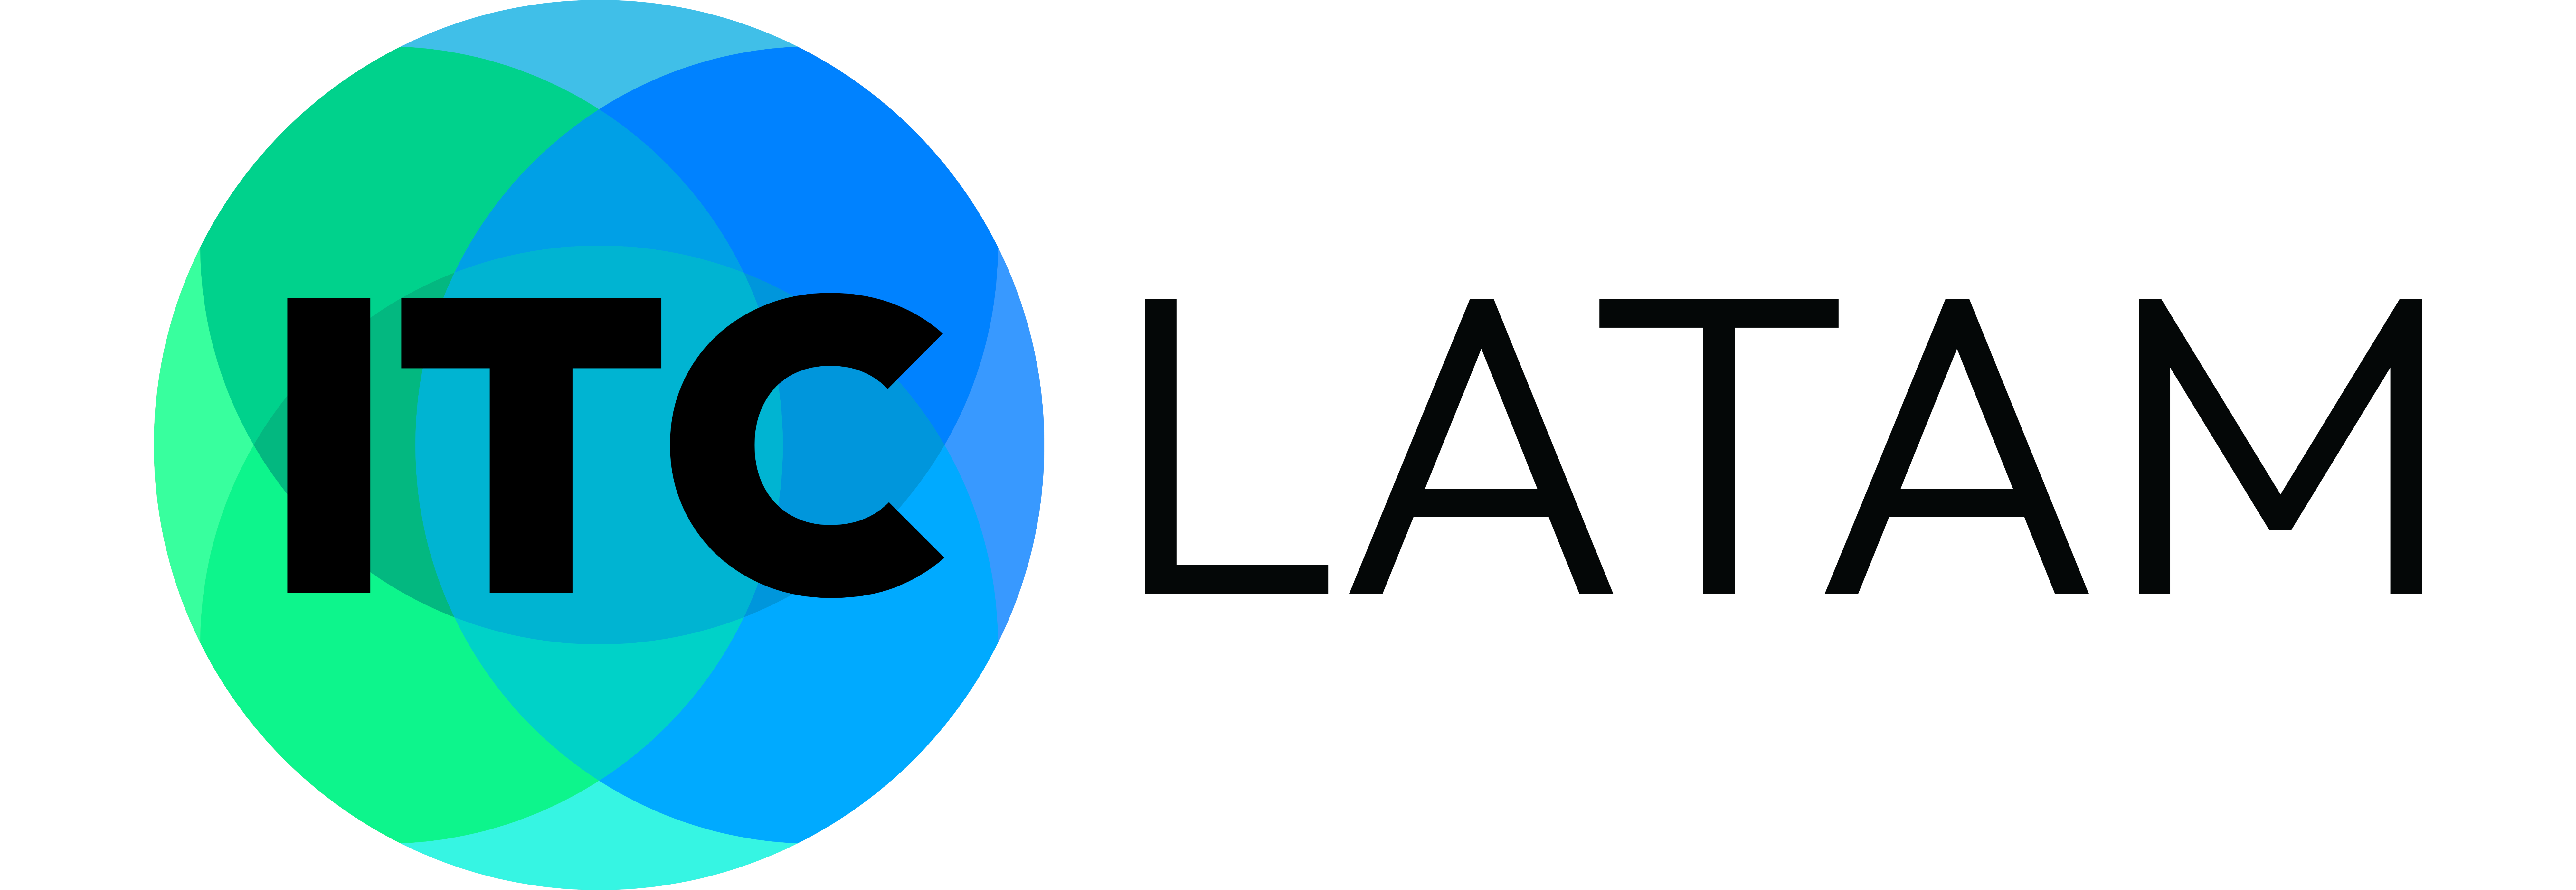 ITC LATAM logo